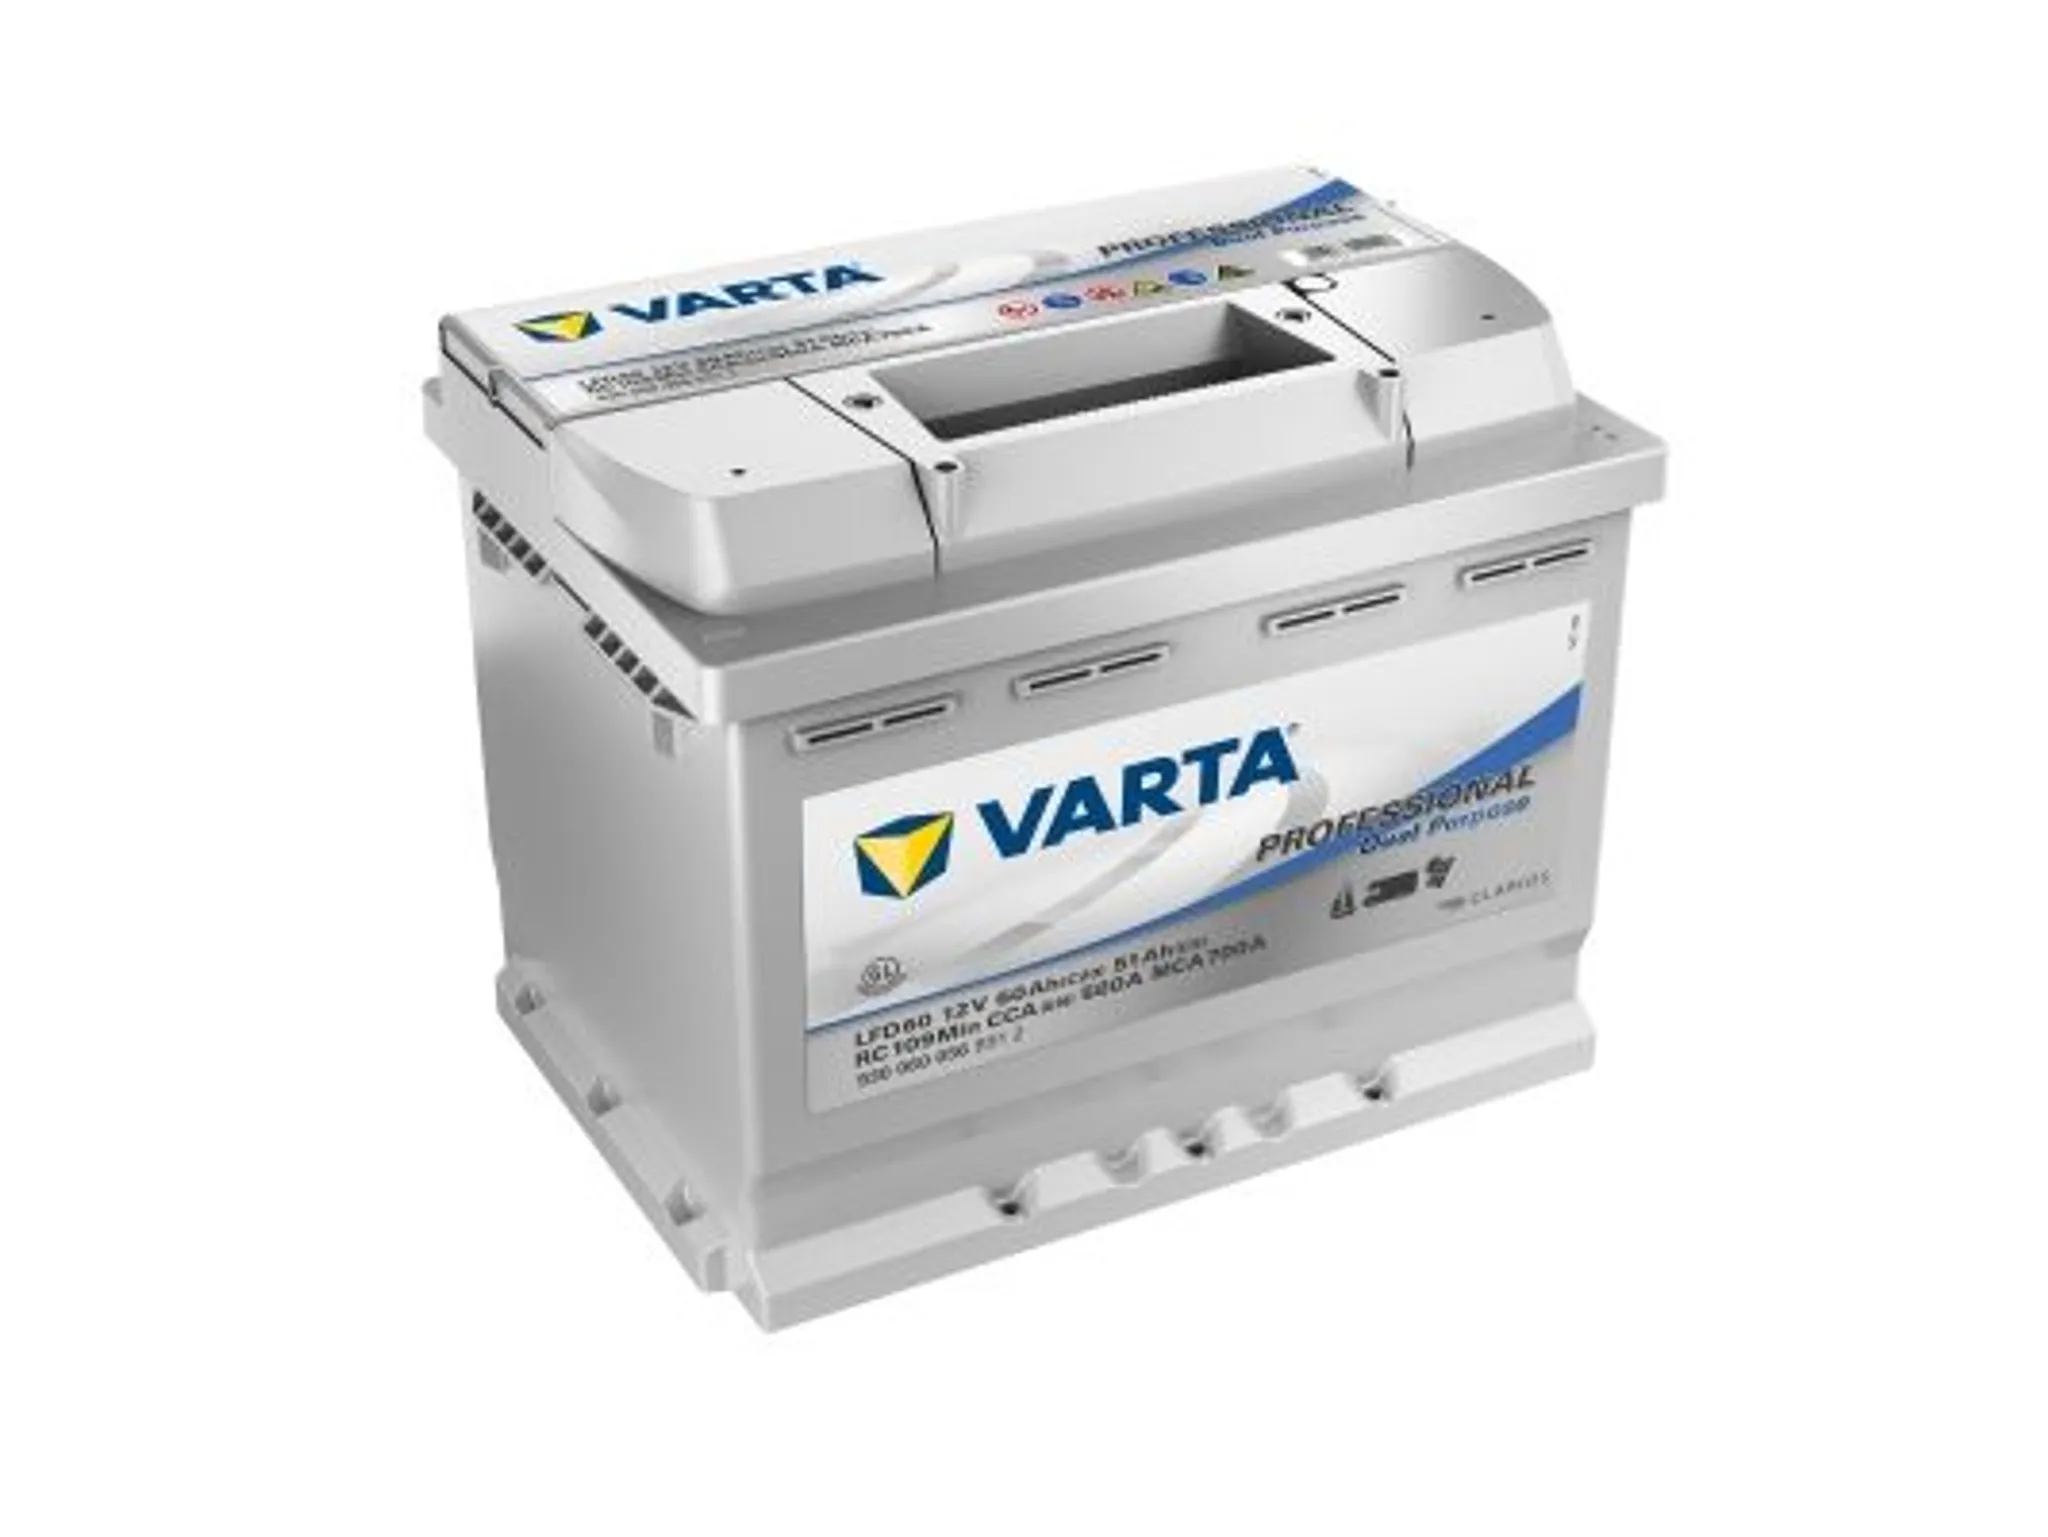 Varta LAD50A Professional DC AGM Batterie 12V 50Ah 400A 830050044, AGM  Batterien, Akkus & Batterien